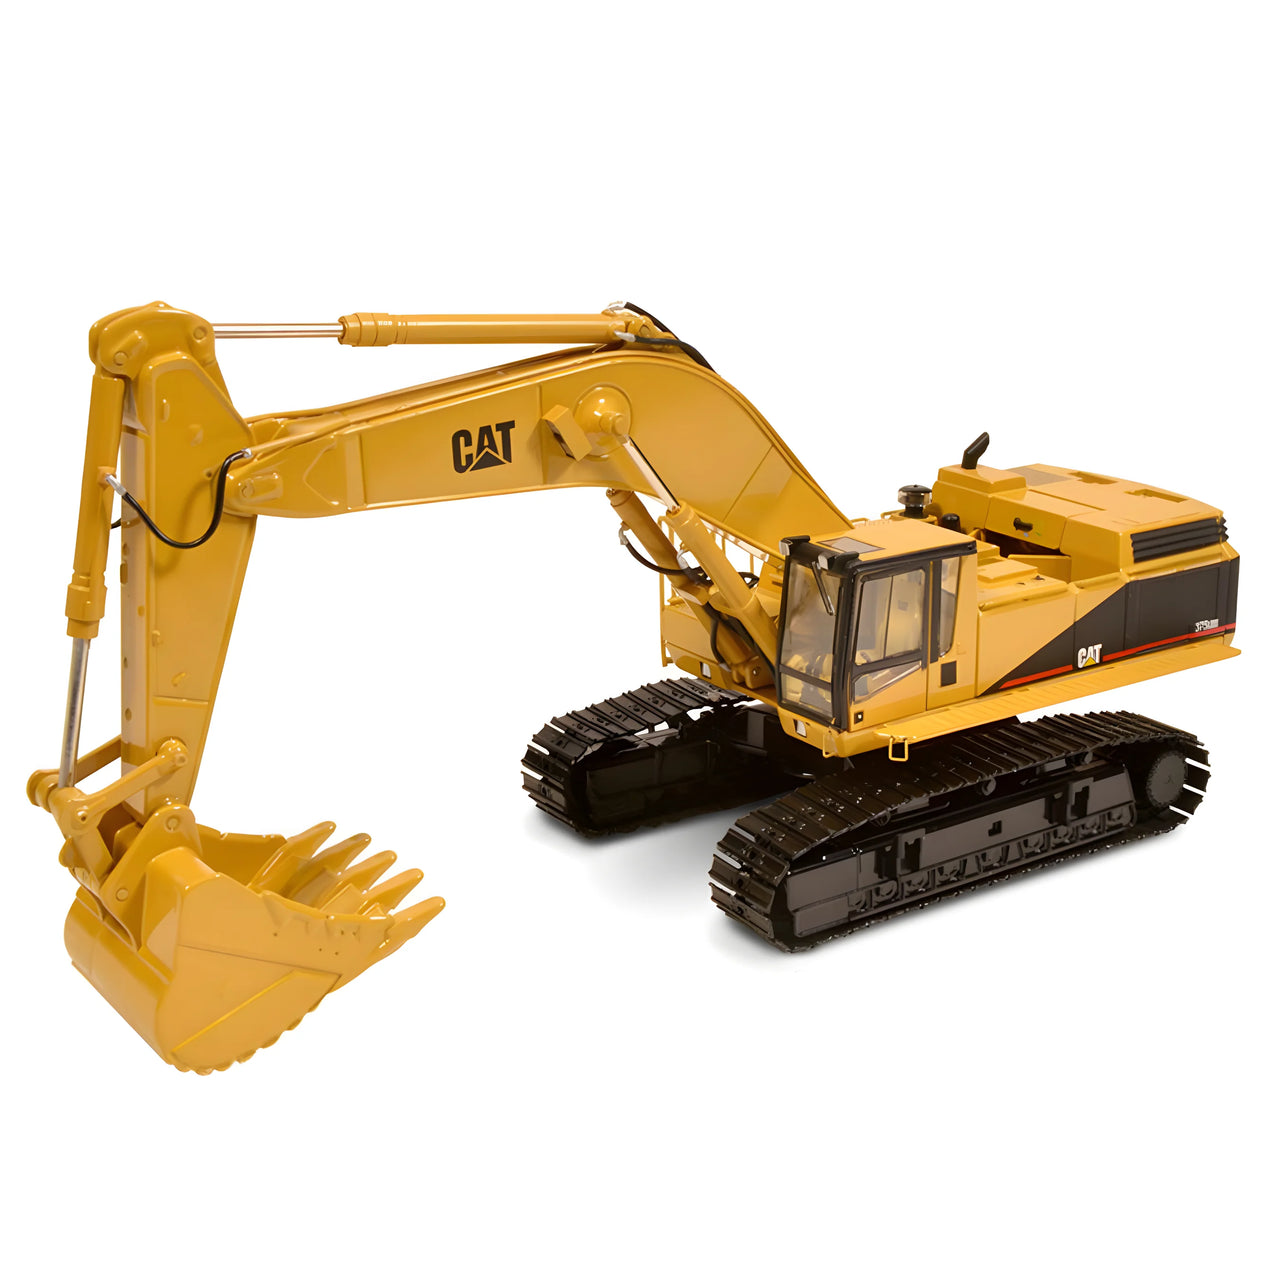 CCM48015 Caterpillar 375L Crawler Excavator Scale 1:48 (Discontinued Model)